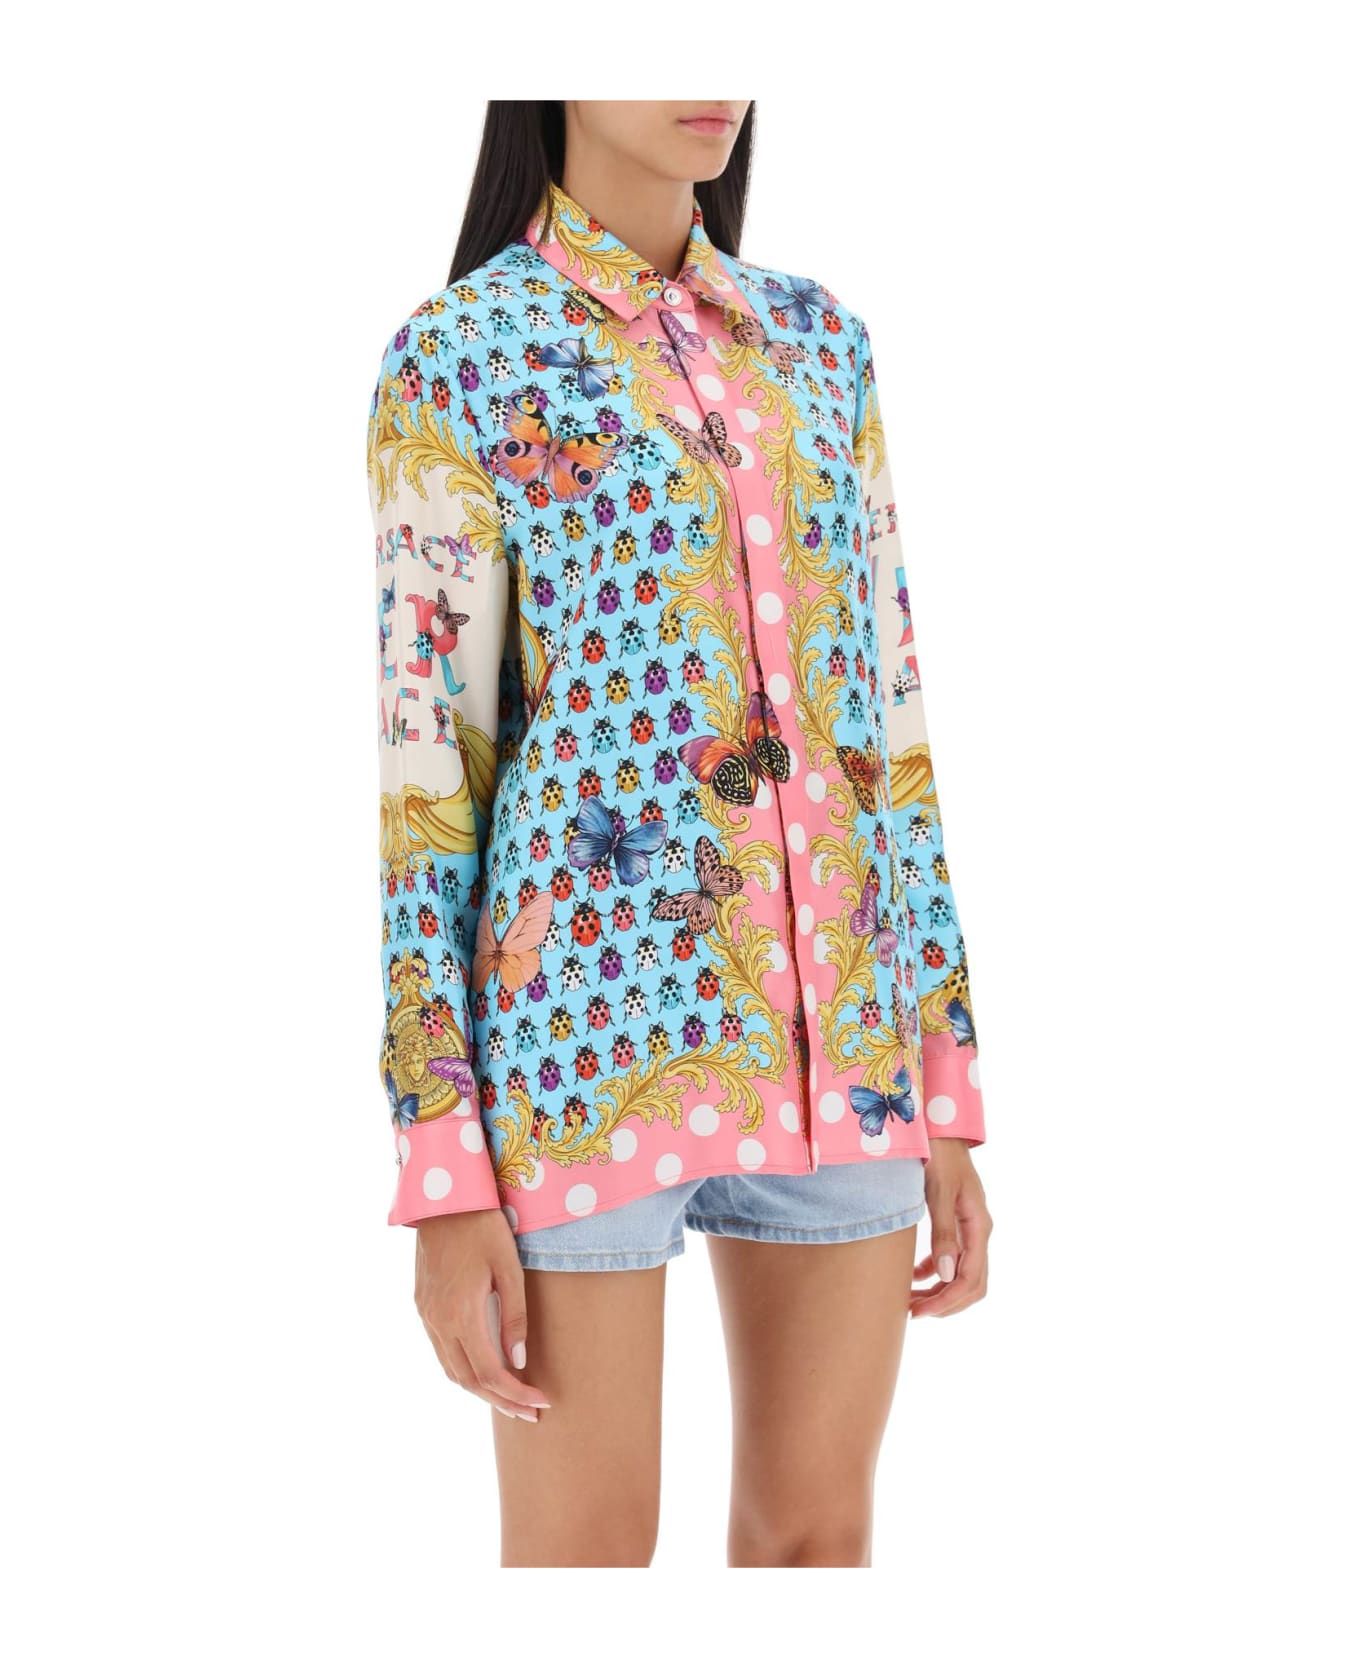 Versace Printed Silk Shirt - Multicolor シャツ